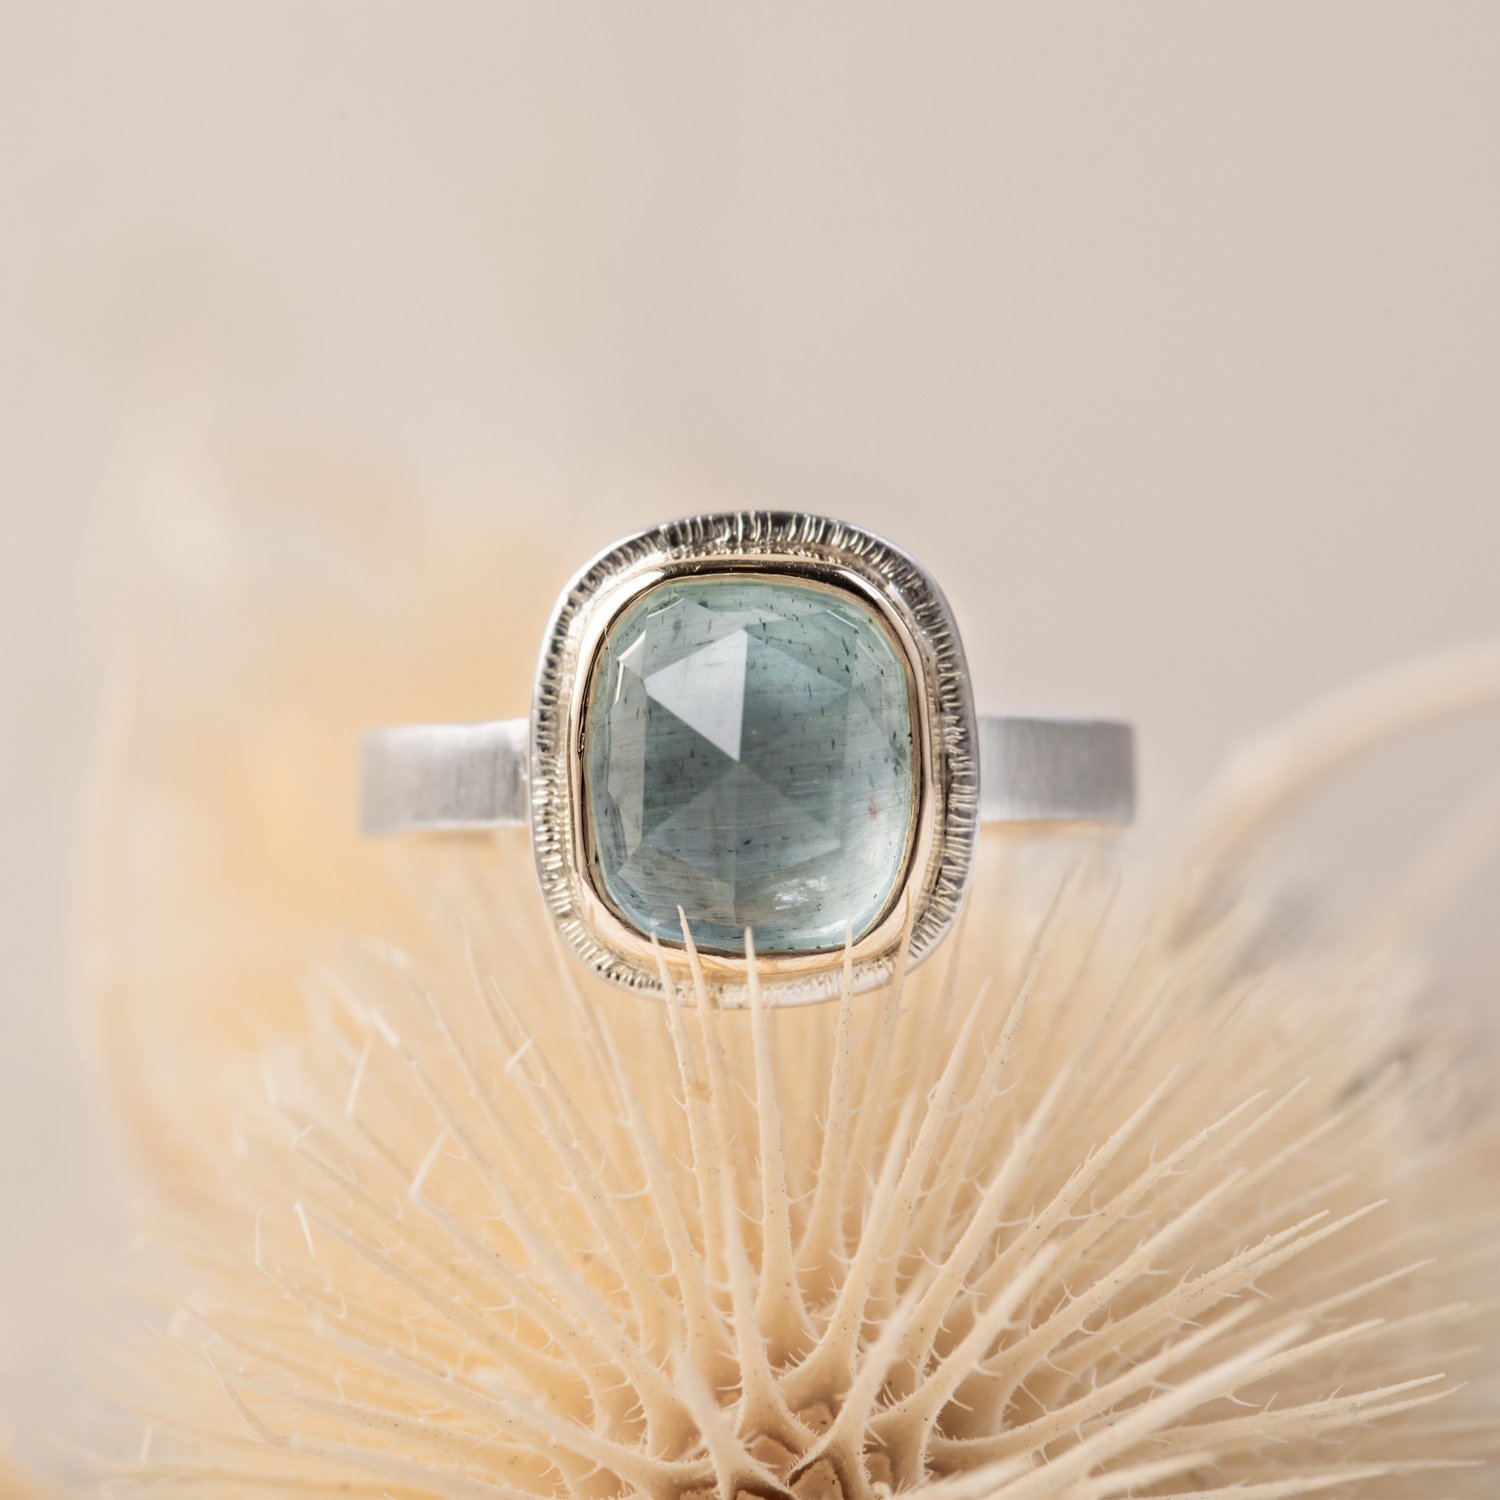 styled-gemstone-rings-and-pendants-6.jpg